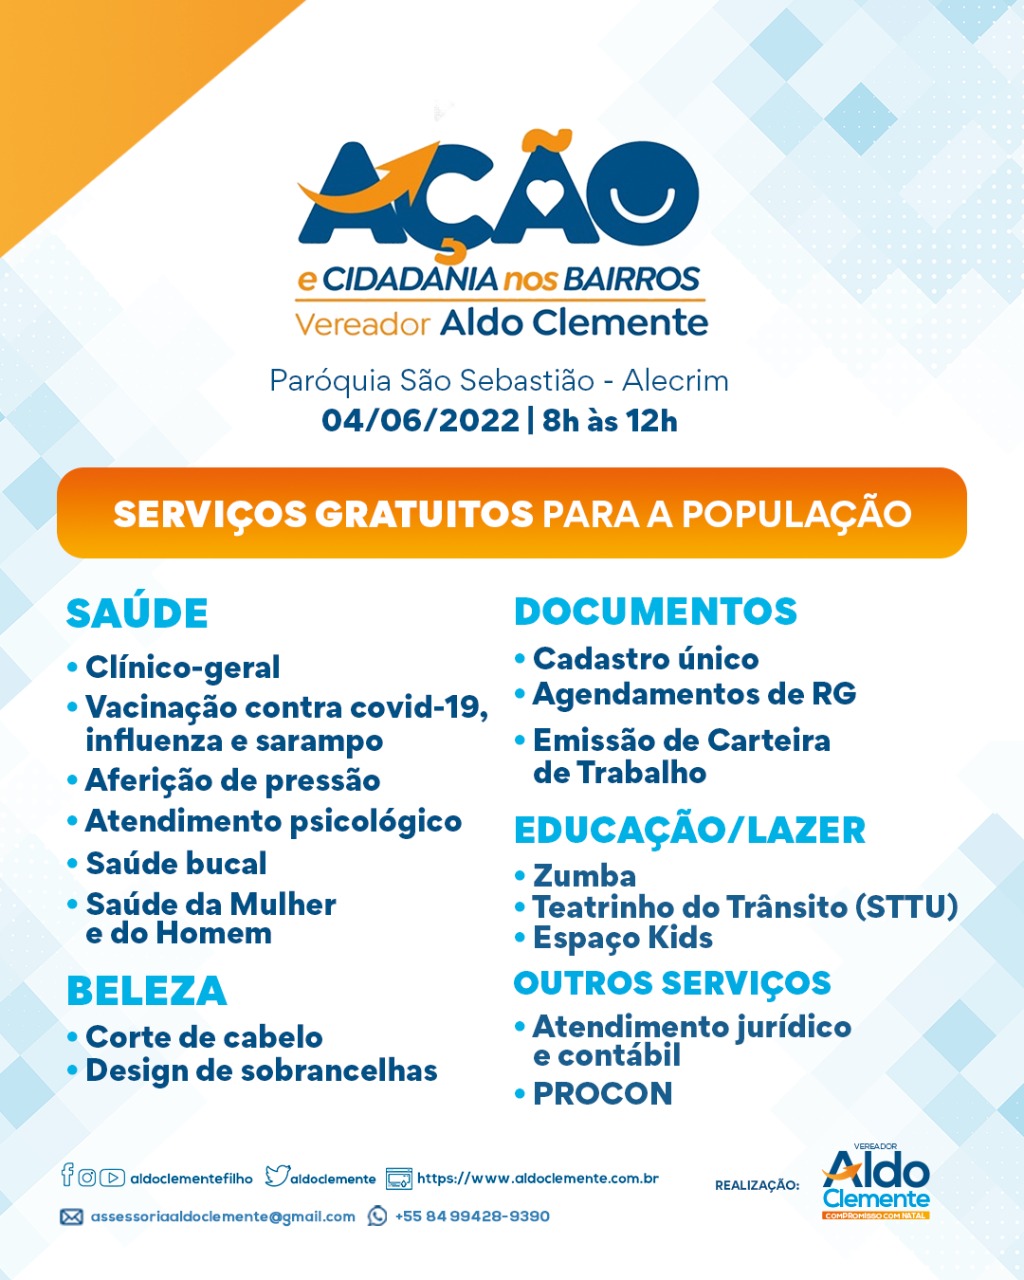 Aldo Clemente promove “Ação e Cidadania nos Bairros” no Alecrim; confira os serviços